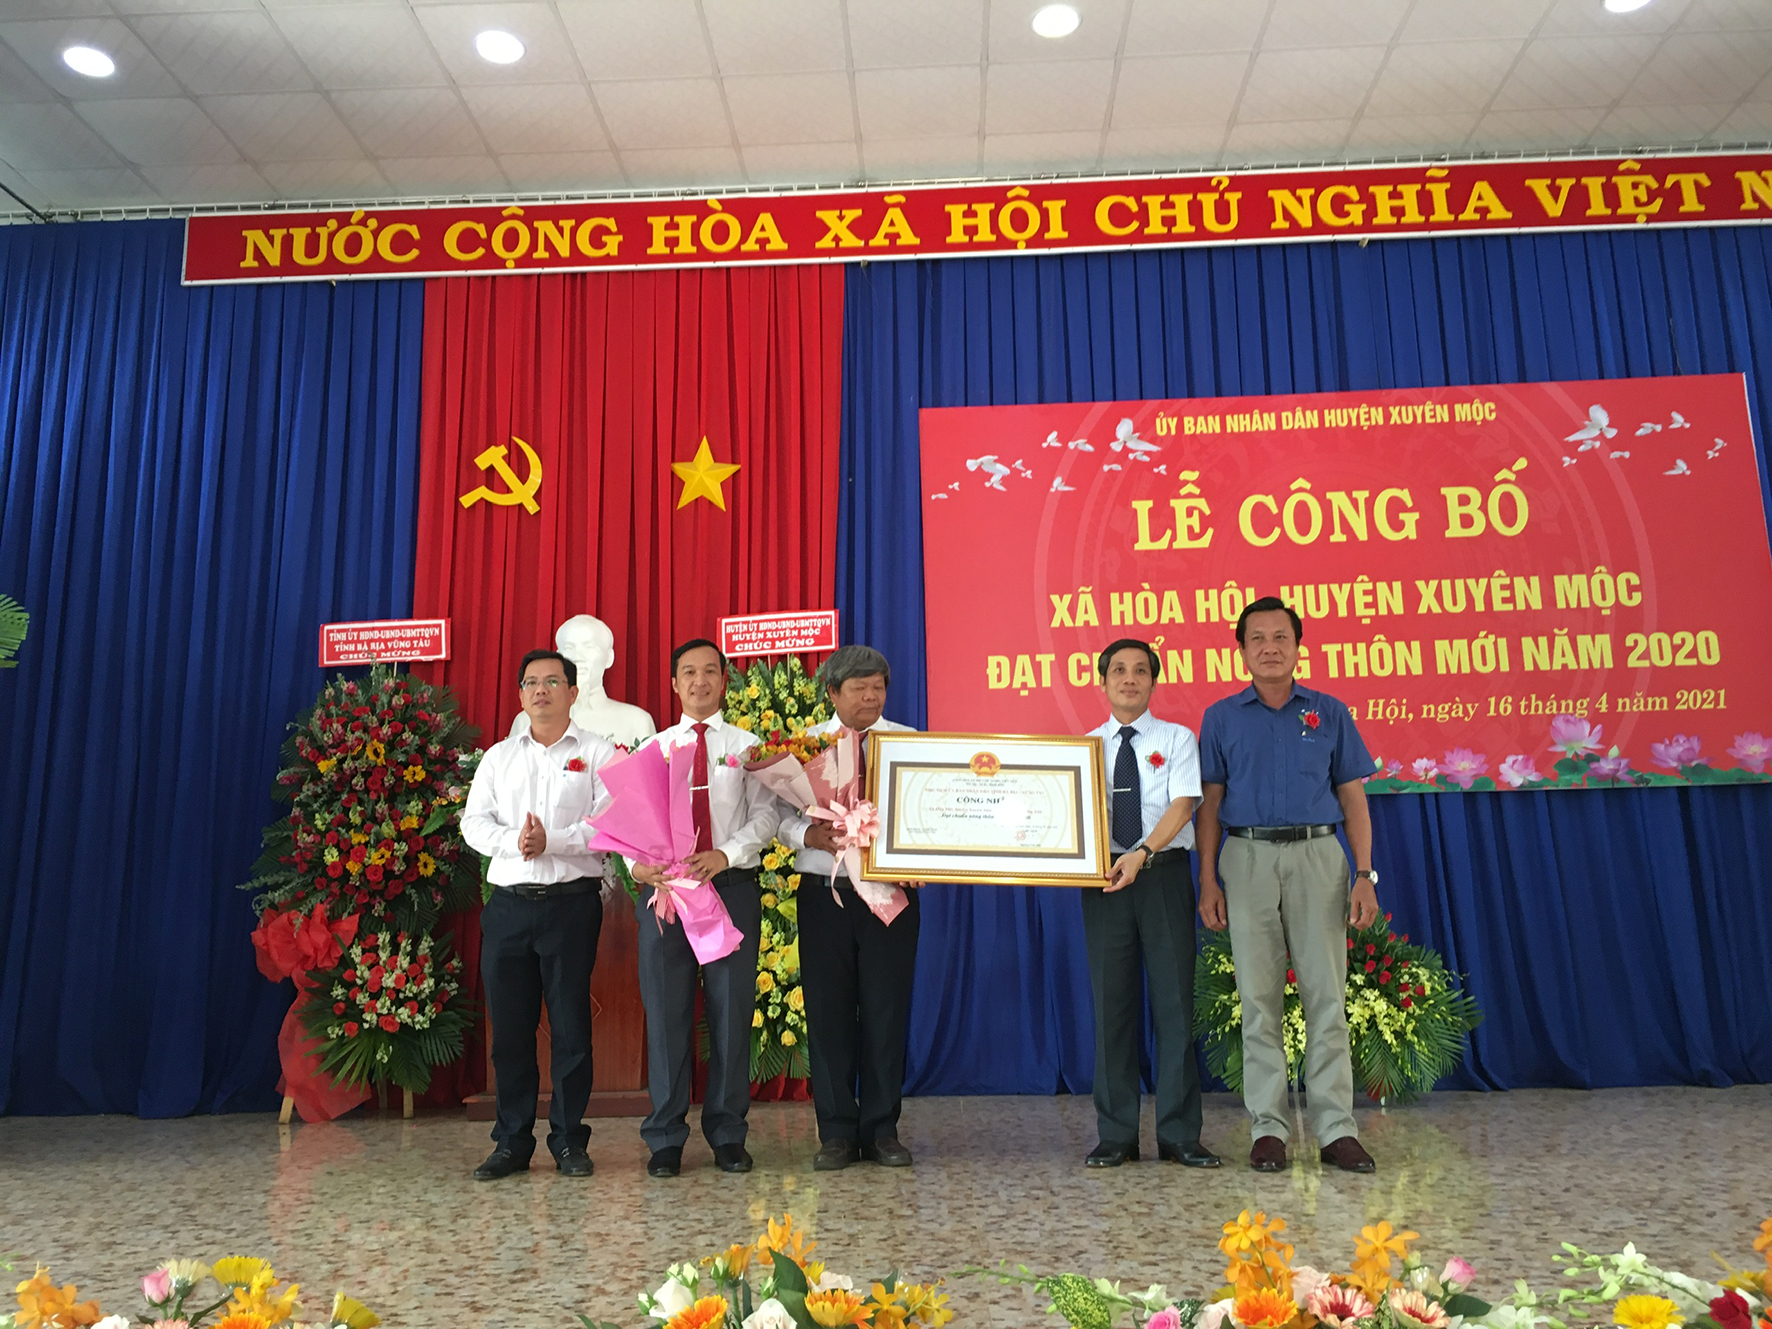 Ông Nguyễn Kế Toại, Phó Chủ tịch UBMTTQ Việt Nam tỉnh trao bằng công nhận đạt chuẩn NTM cho xã Hòa Hội.